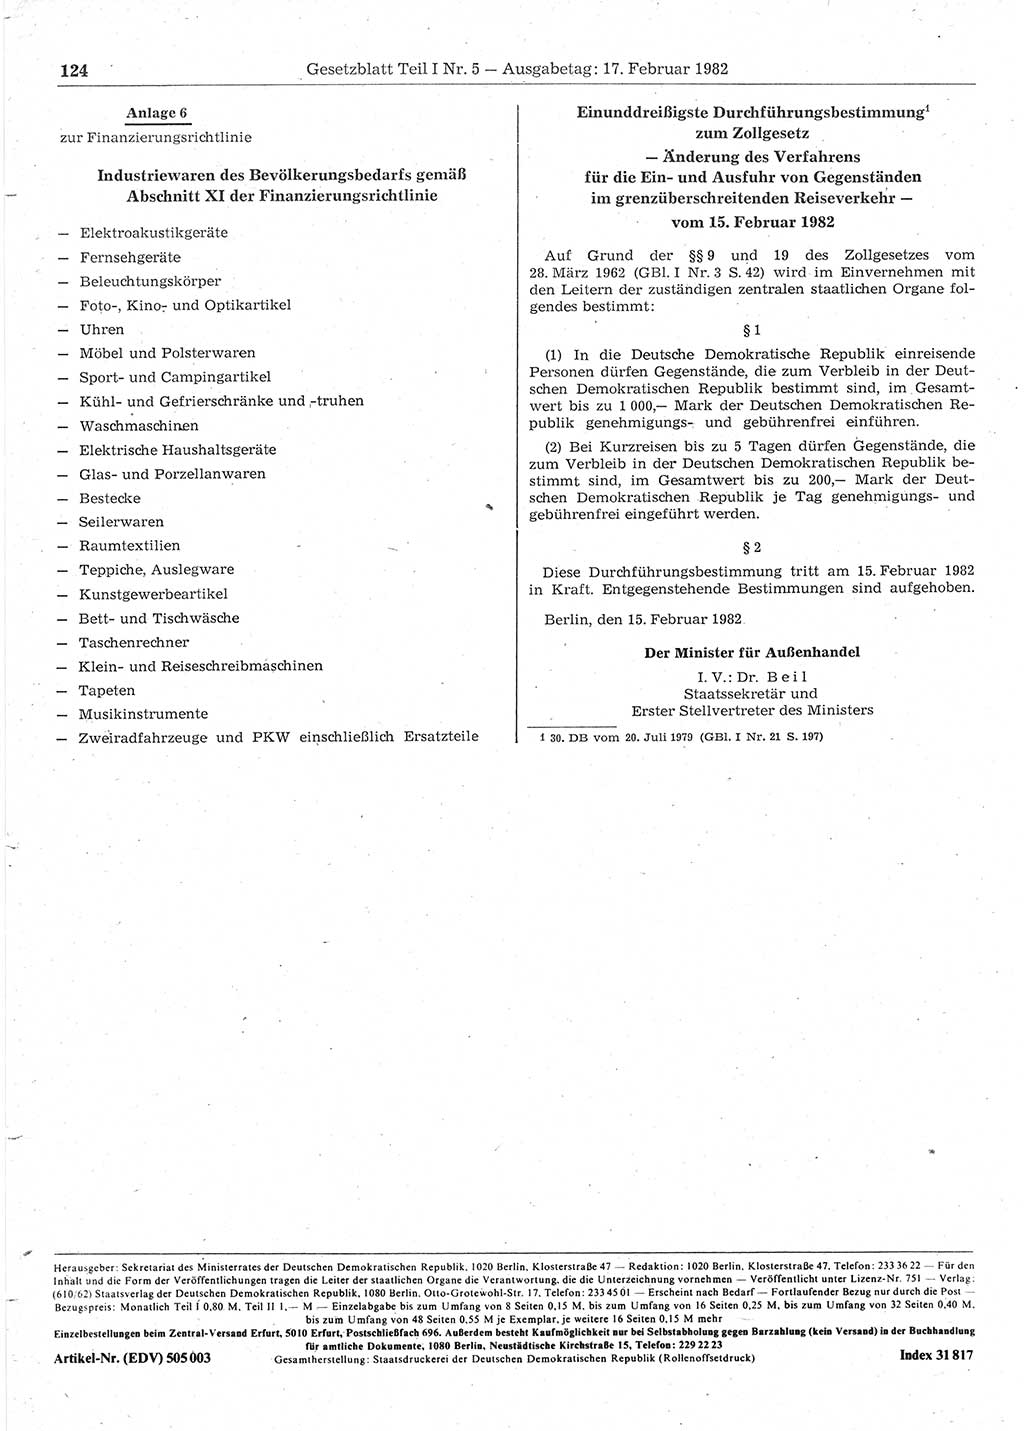 Gesetzblatt (GBl.) der Deutschen Demokratischen Republik (DDR) Teil Ⅰ 1982, Seite 124 (GBl. DDR Ⅰ 1982, S. 124)